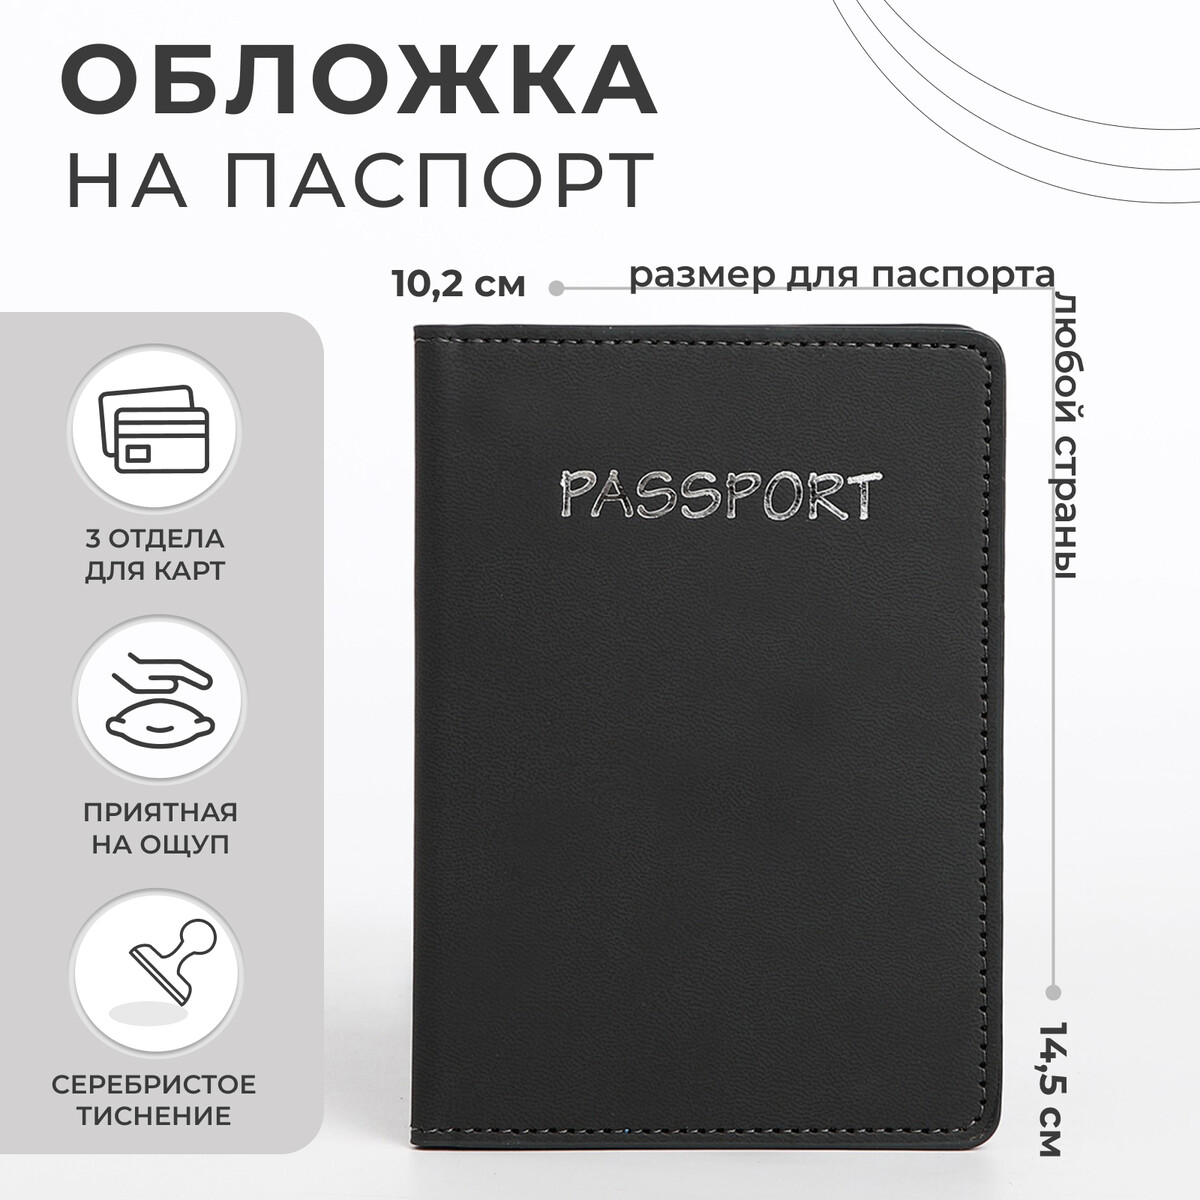 Обложка для паспорта, цвет темно-серый шорты бермуды 8 9 темно серый loloclo